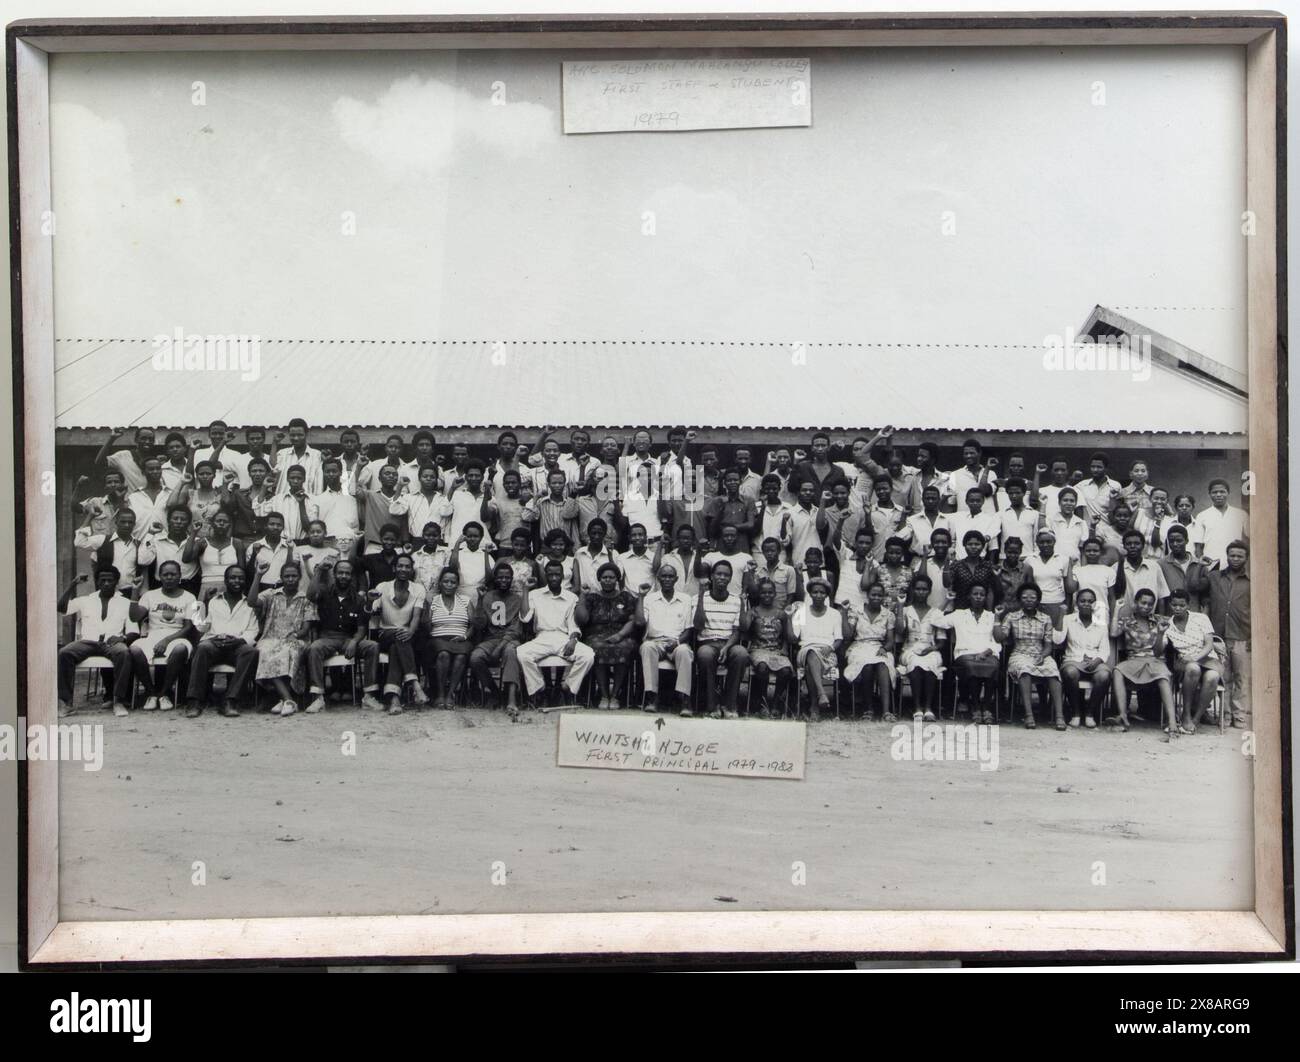 Artefatti del Solomon Mahlangu Freedom College (SOMAFCO). Foto di gruppo in bianco e nero incorniciata di 101 persone. Titolo recita: ANC Solomon Mahlangu Colleg (sic) primo staff & studenti 1979 Nota con freccia punta a: Wintshi Njobe, primo preside 1979-1982 sulla scia della rivolta dei giovani a Soweto e in altre città del Sud Africa del 1976, l'ANC istituì il Solomon Mahlangu Freedom College (SOMAFCO) a Mazimbu vicino alla città di Morongoro, Tanzania, su terreni donati dal governo tanzaniano. Il College fu il risultato del lavoro del comitato educativo dell'ANC a Londra per Pione Foto Stock